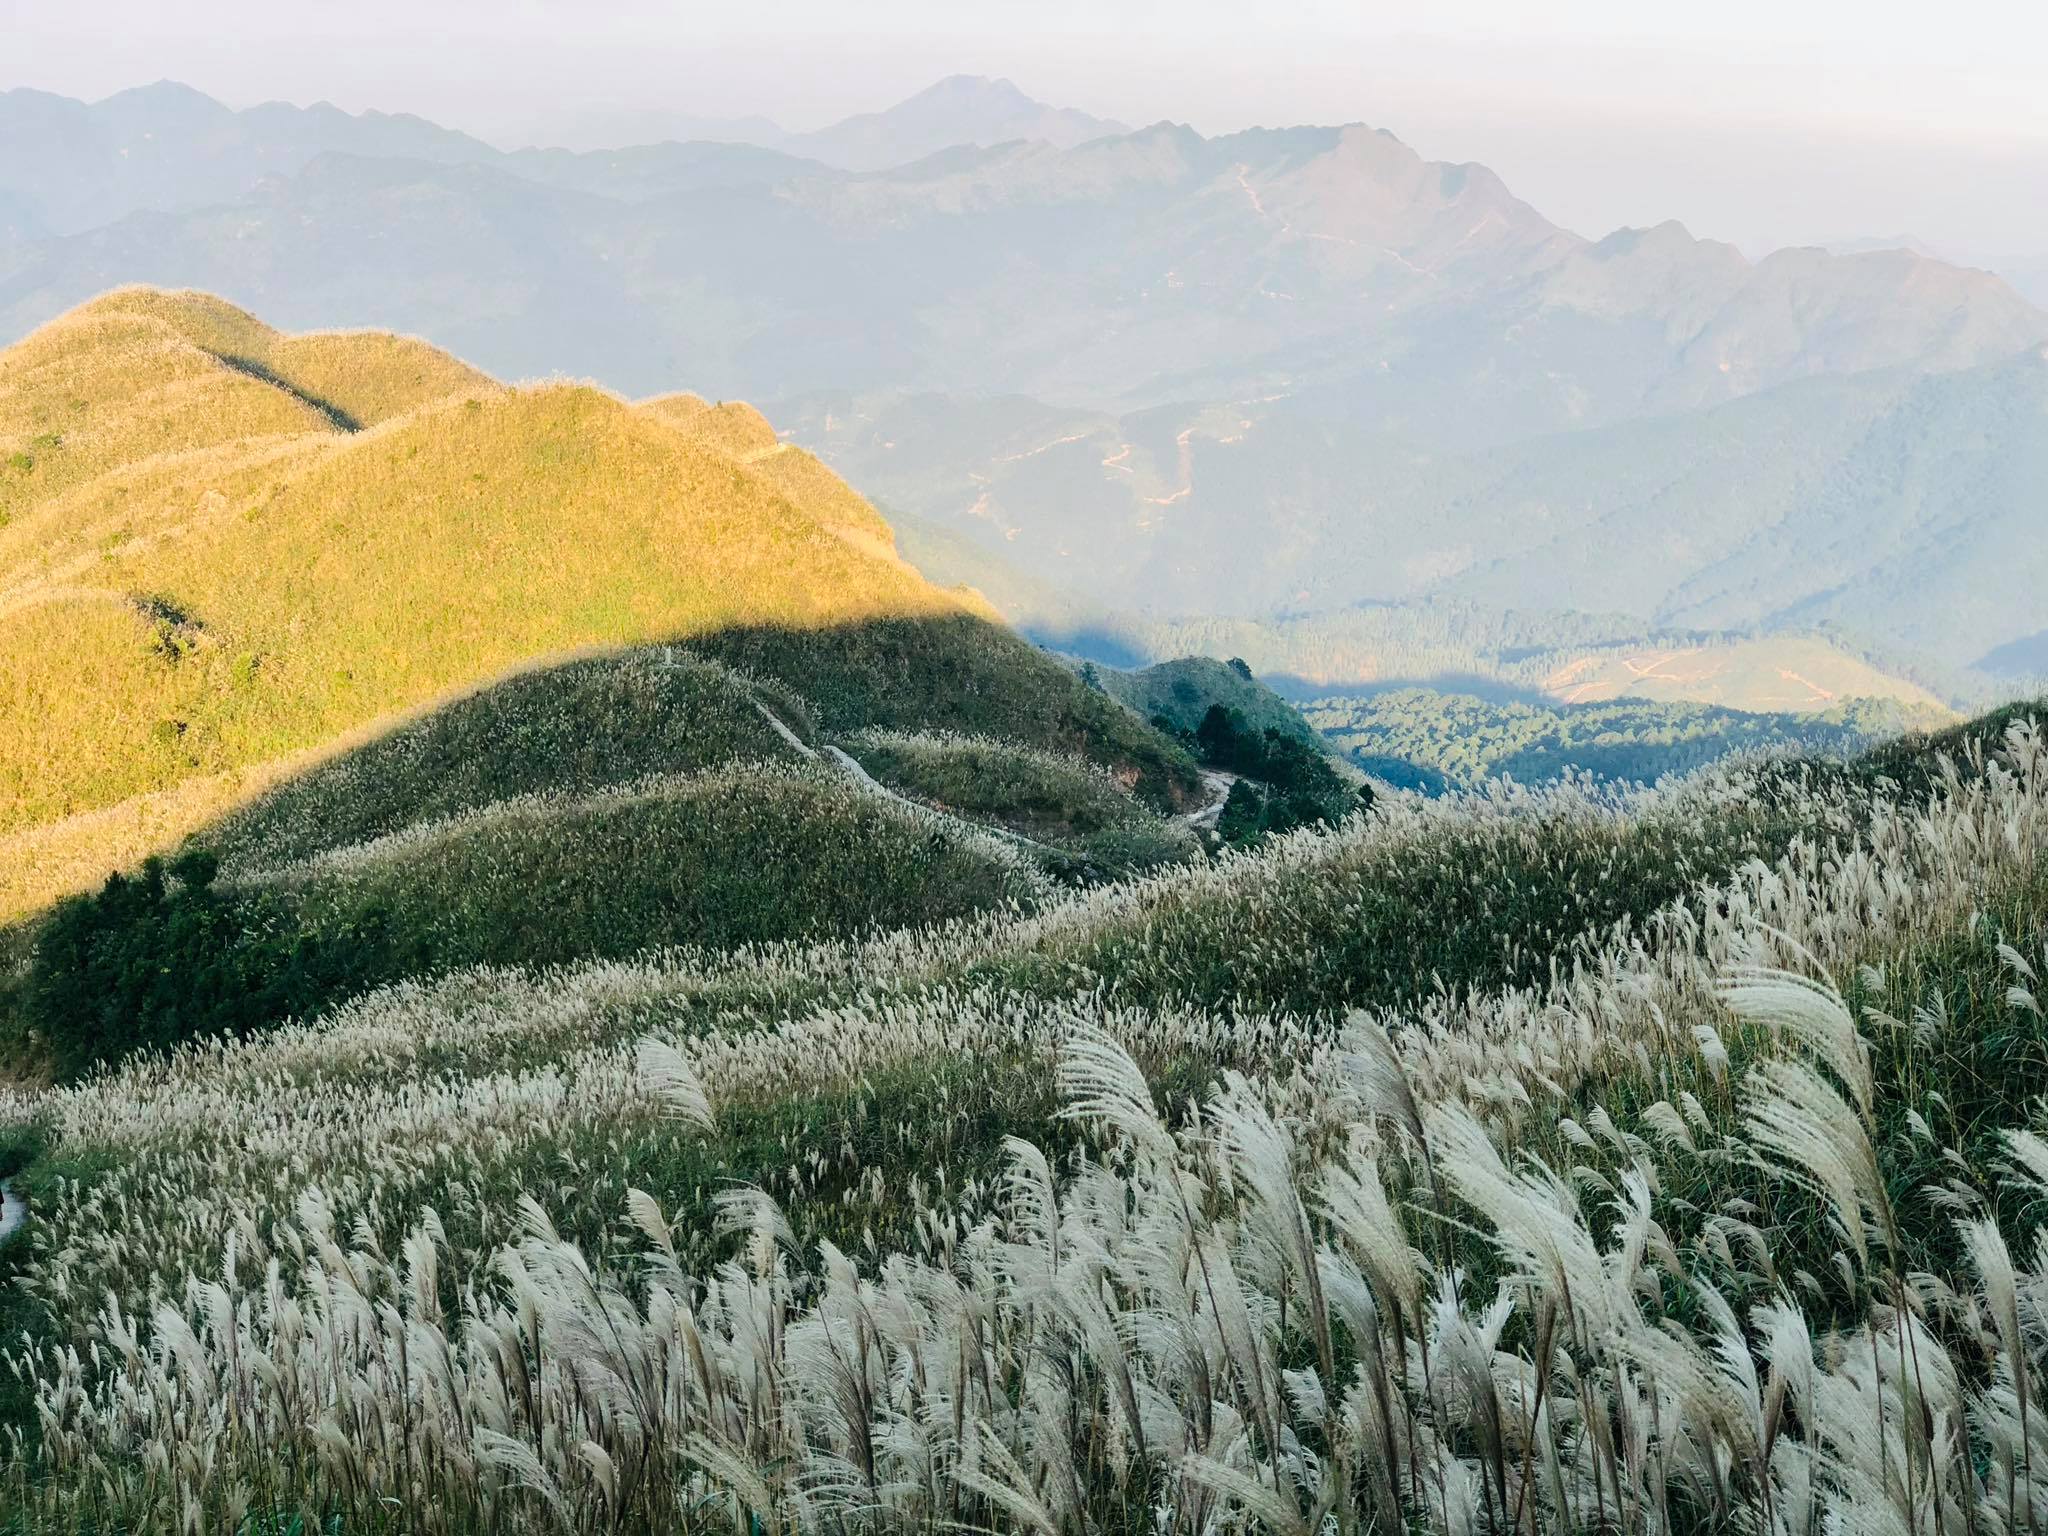 Du khách có thể đến Bình Liêu vào khoảng tháng 11 để chụp những tấm hình siêu đẹp với cánh đồng lau